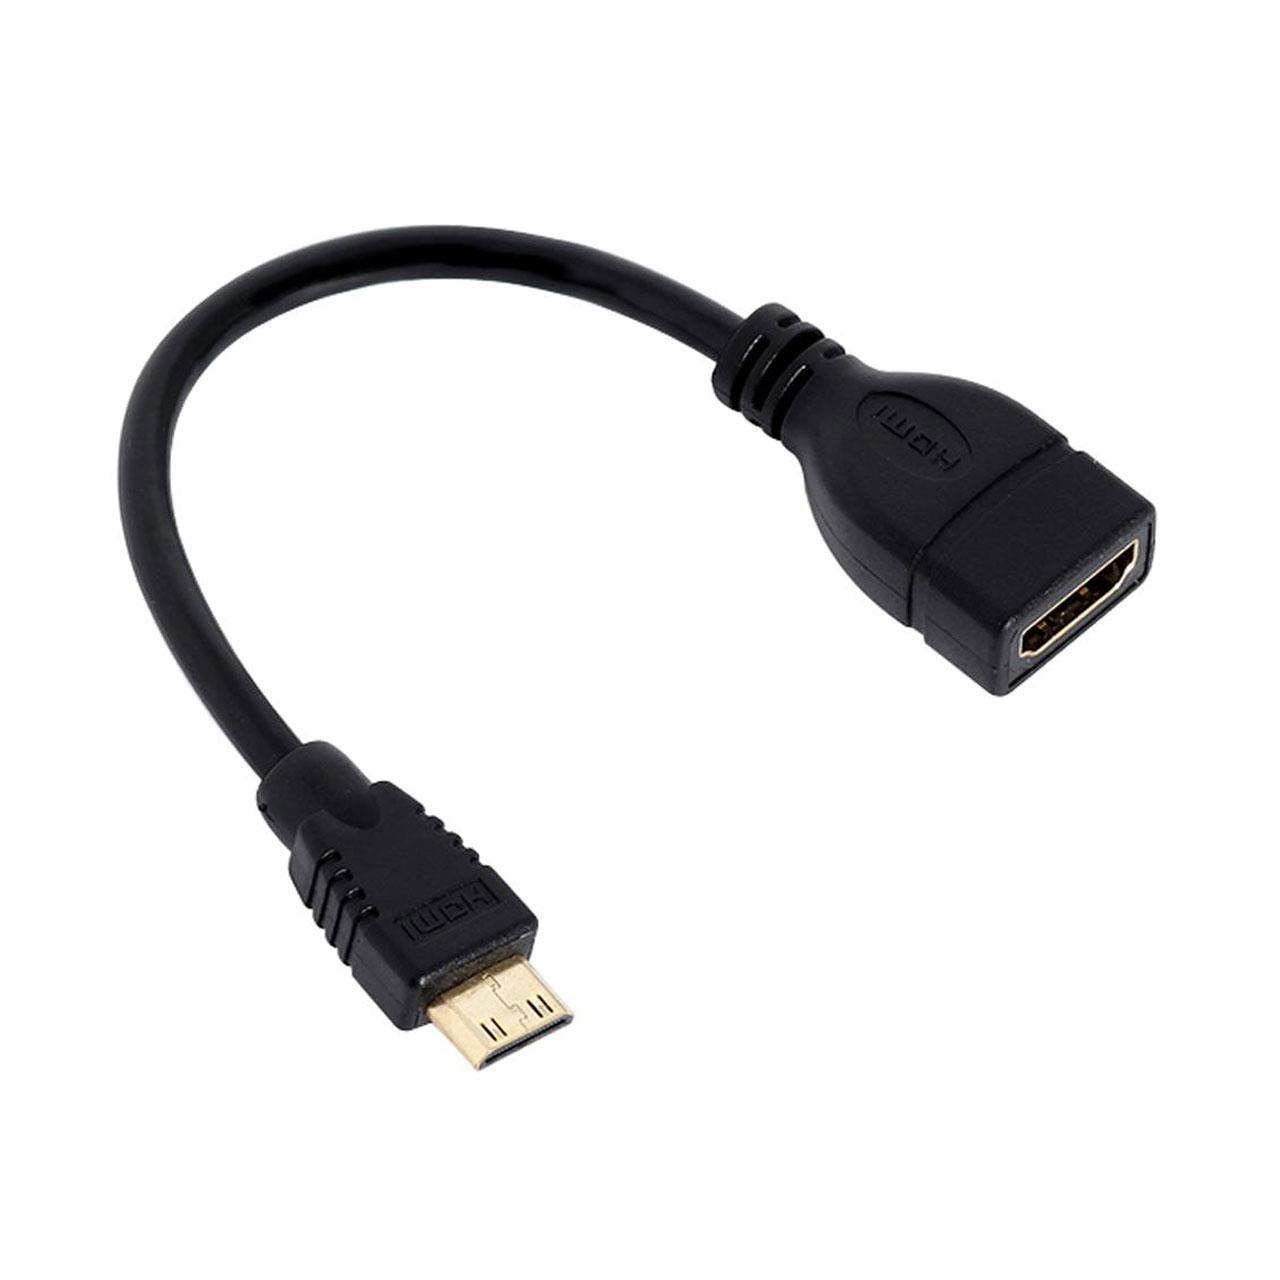 Cable Mini HDMI to HDMI